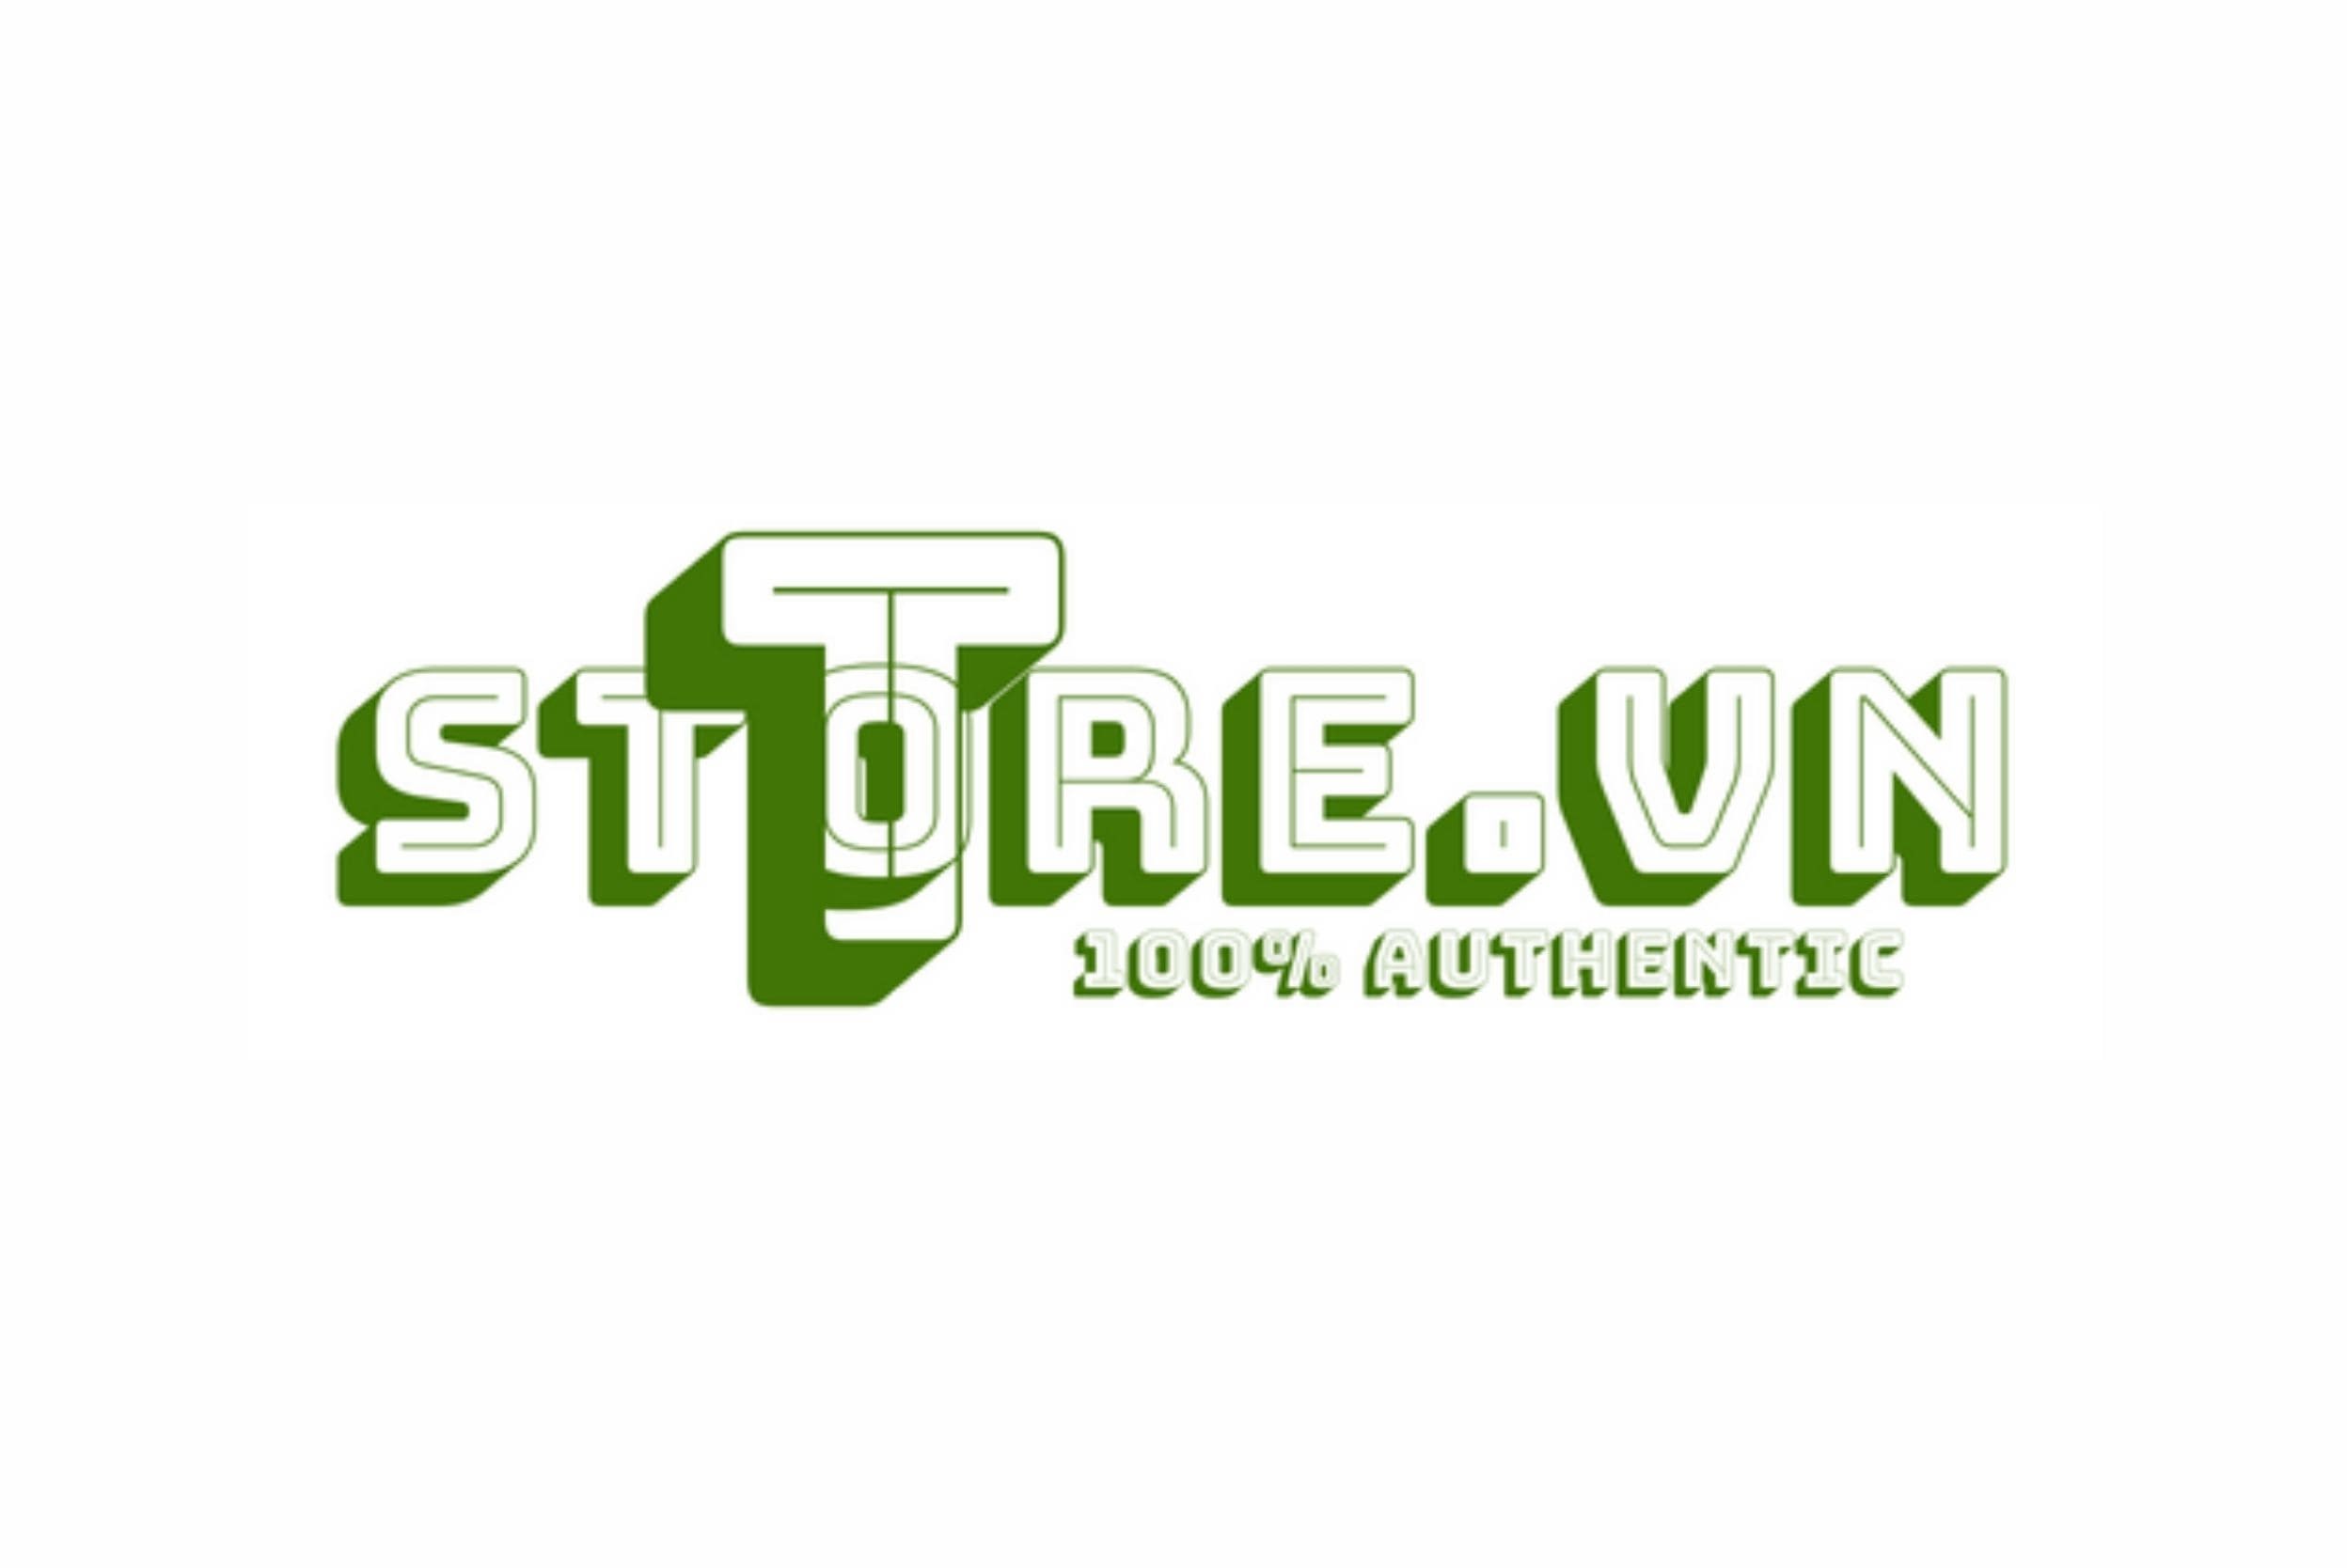 tstore.vn-logo